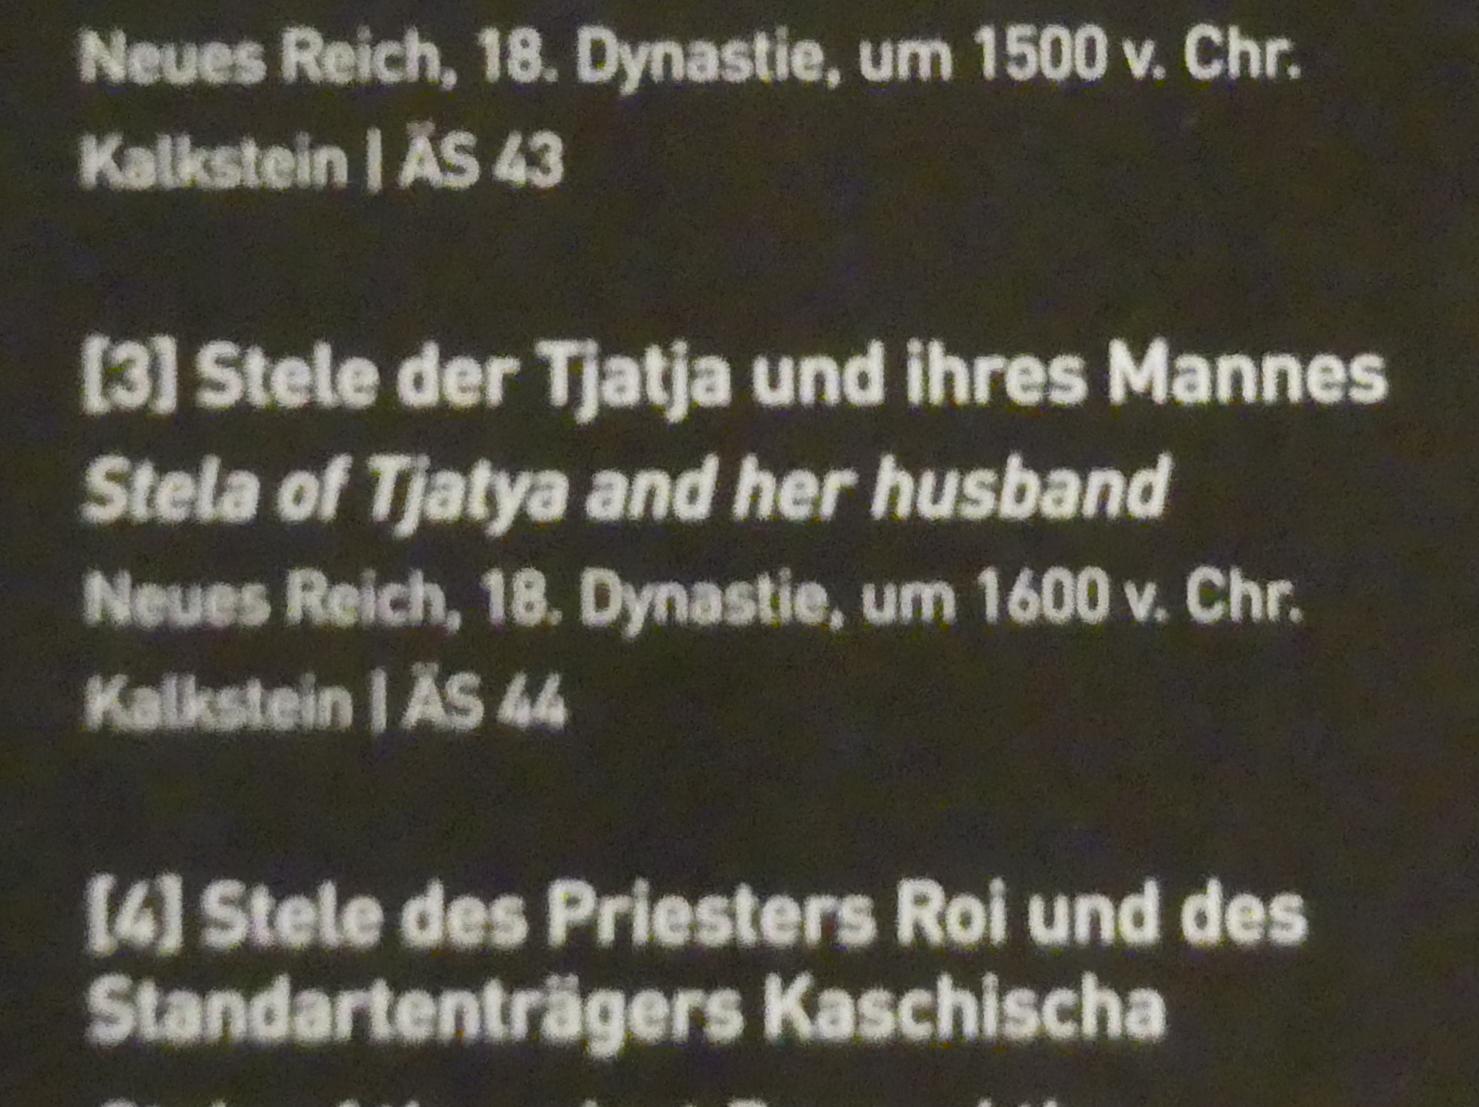 Stele der Tjatja und ihres Mannes, 18. Dynastie, Undatiert, 1600 v. Chr., Bild 2/2